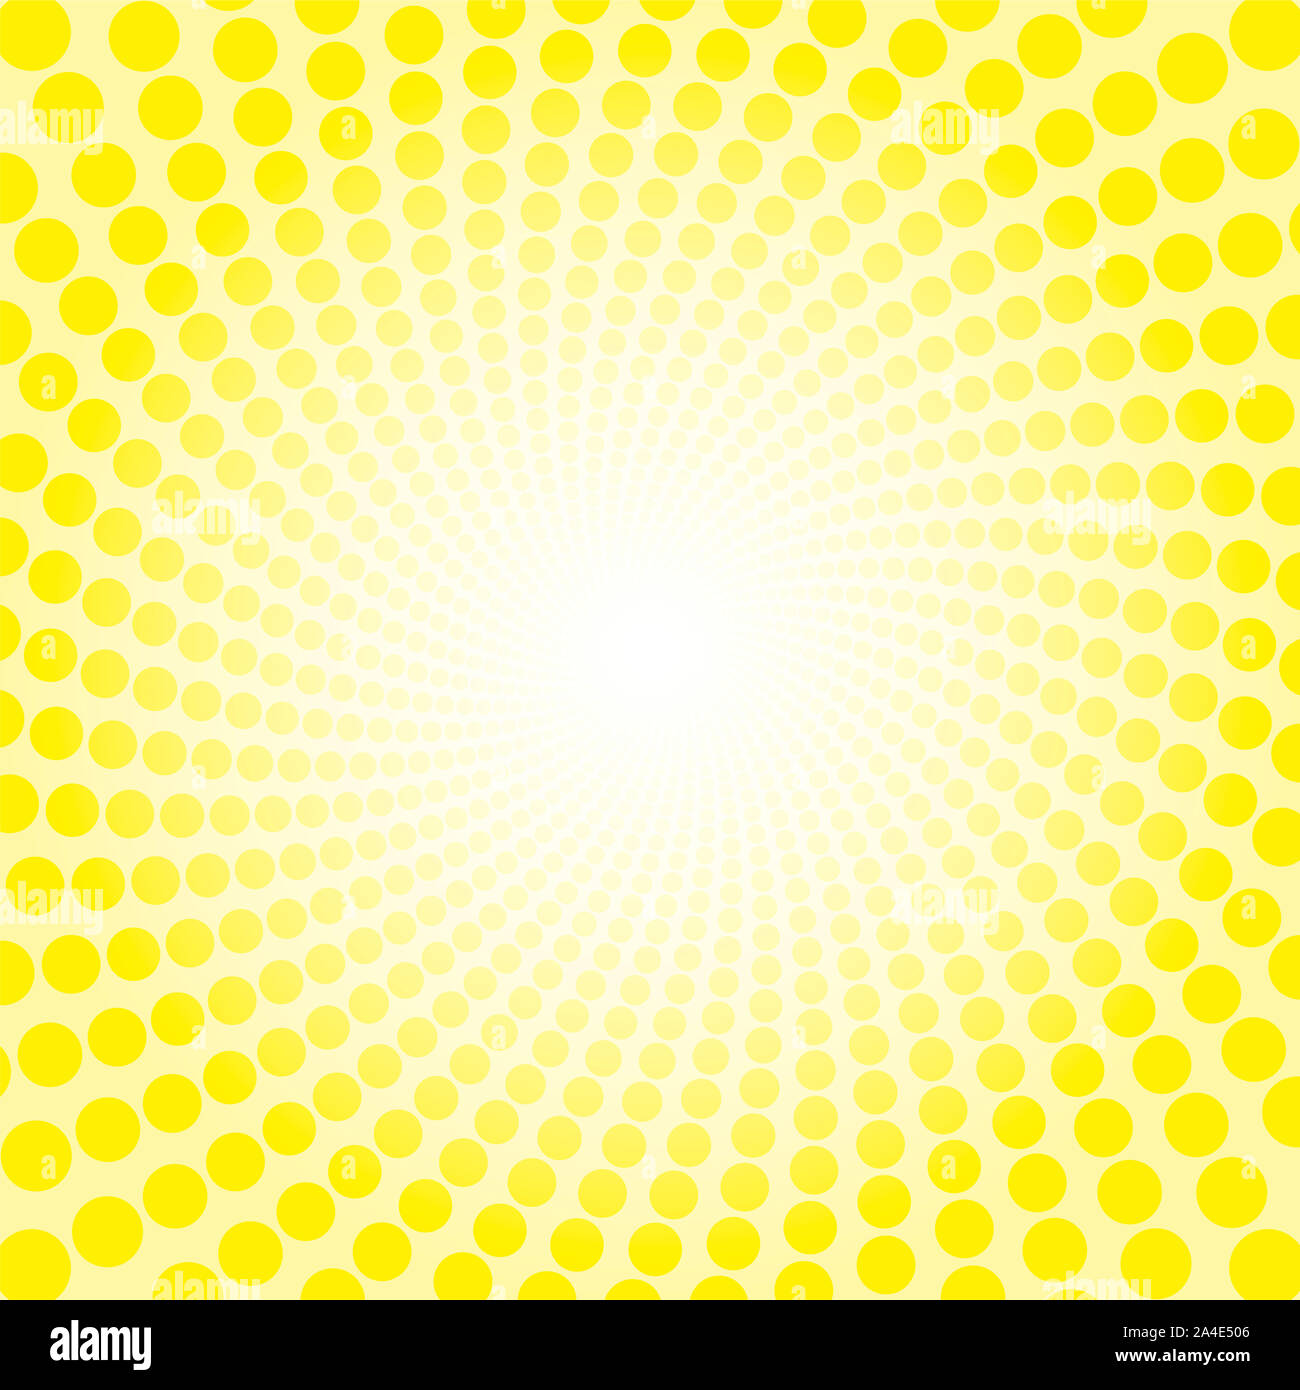 Gelbe frische Spirale sun-LED-Muster. Gepunktete Tunnel mit hellen Zentrum - Twisted kreisförmigen Hintergrund Illustration, hypnotisch und psychedelisch. Stockfoto